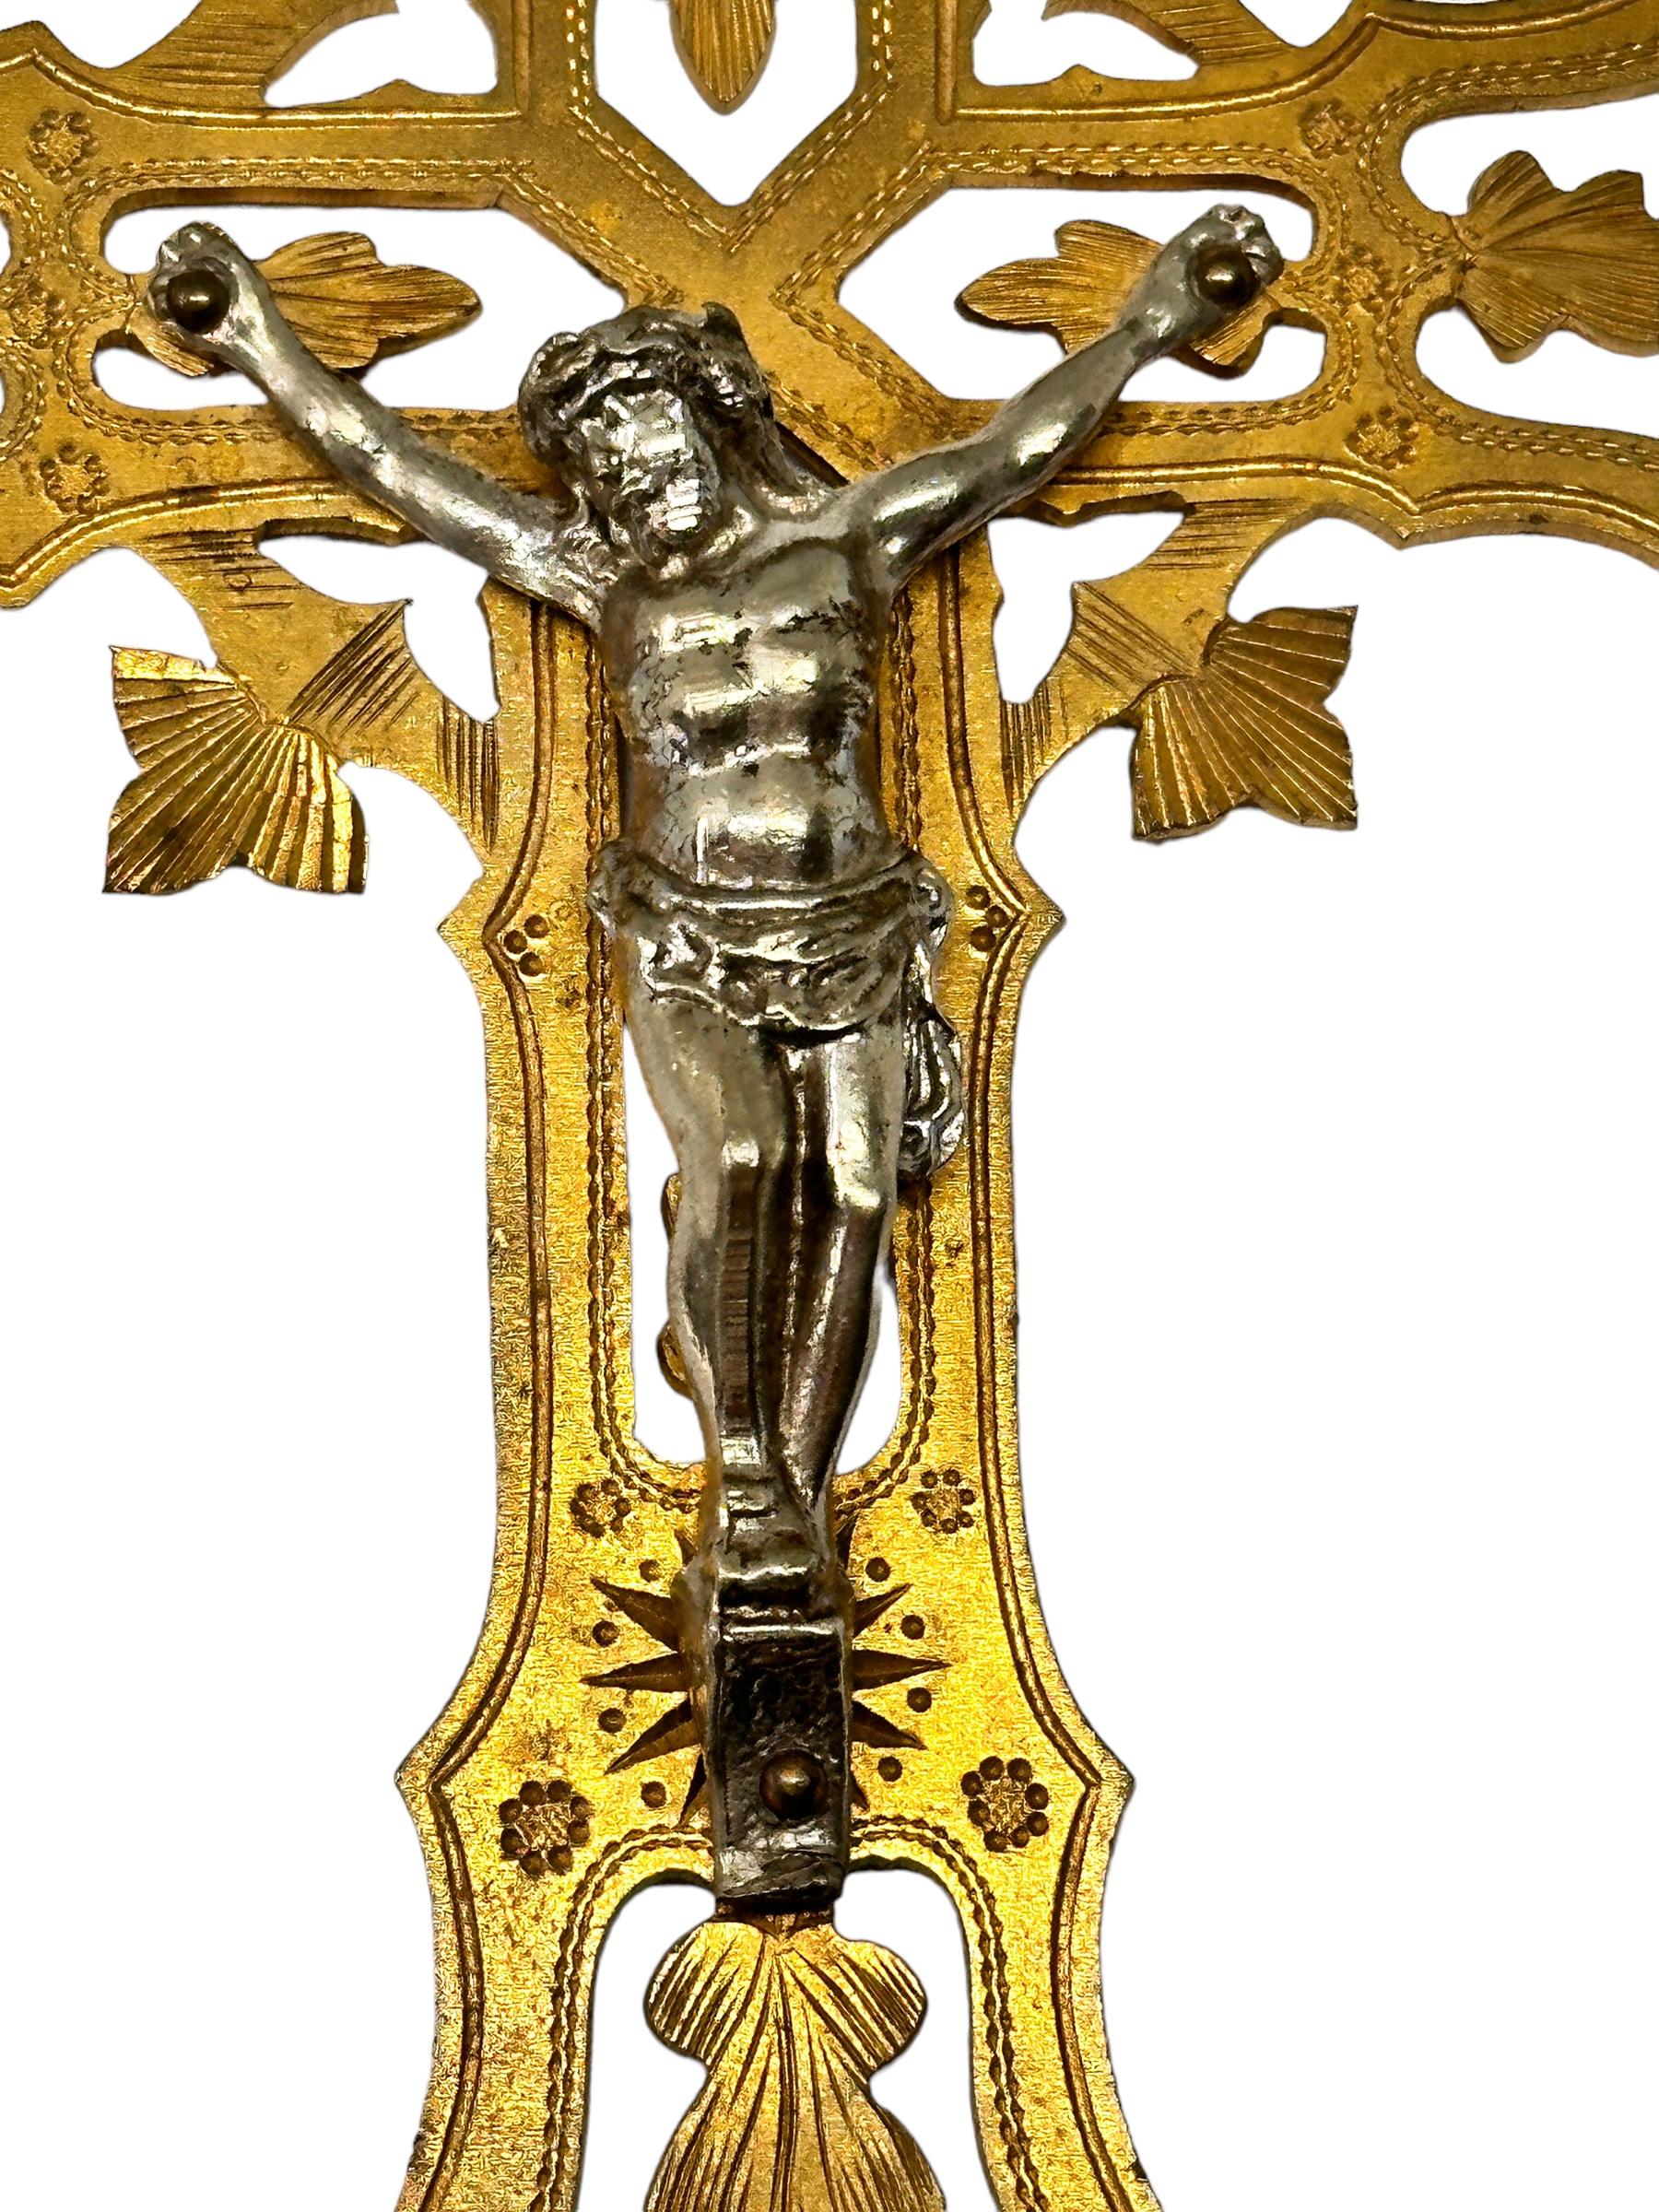 Ce pendentif en forme de croix antique est fabriqué à la main en métal. Elle est très belle et sera un bel objet sur votre mur ou simplement à placer dans votre collection de reliques et d'objets de christianisme.
Elle sera du plus bel effet dans